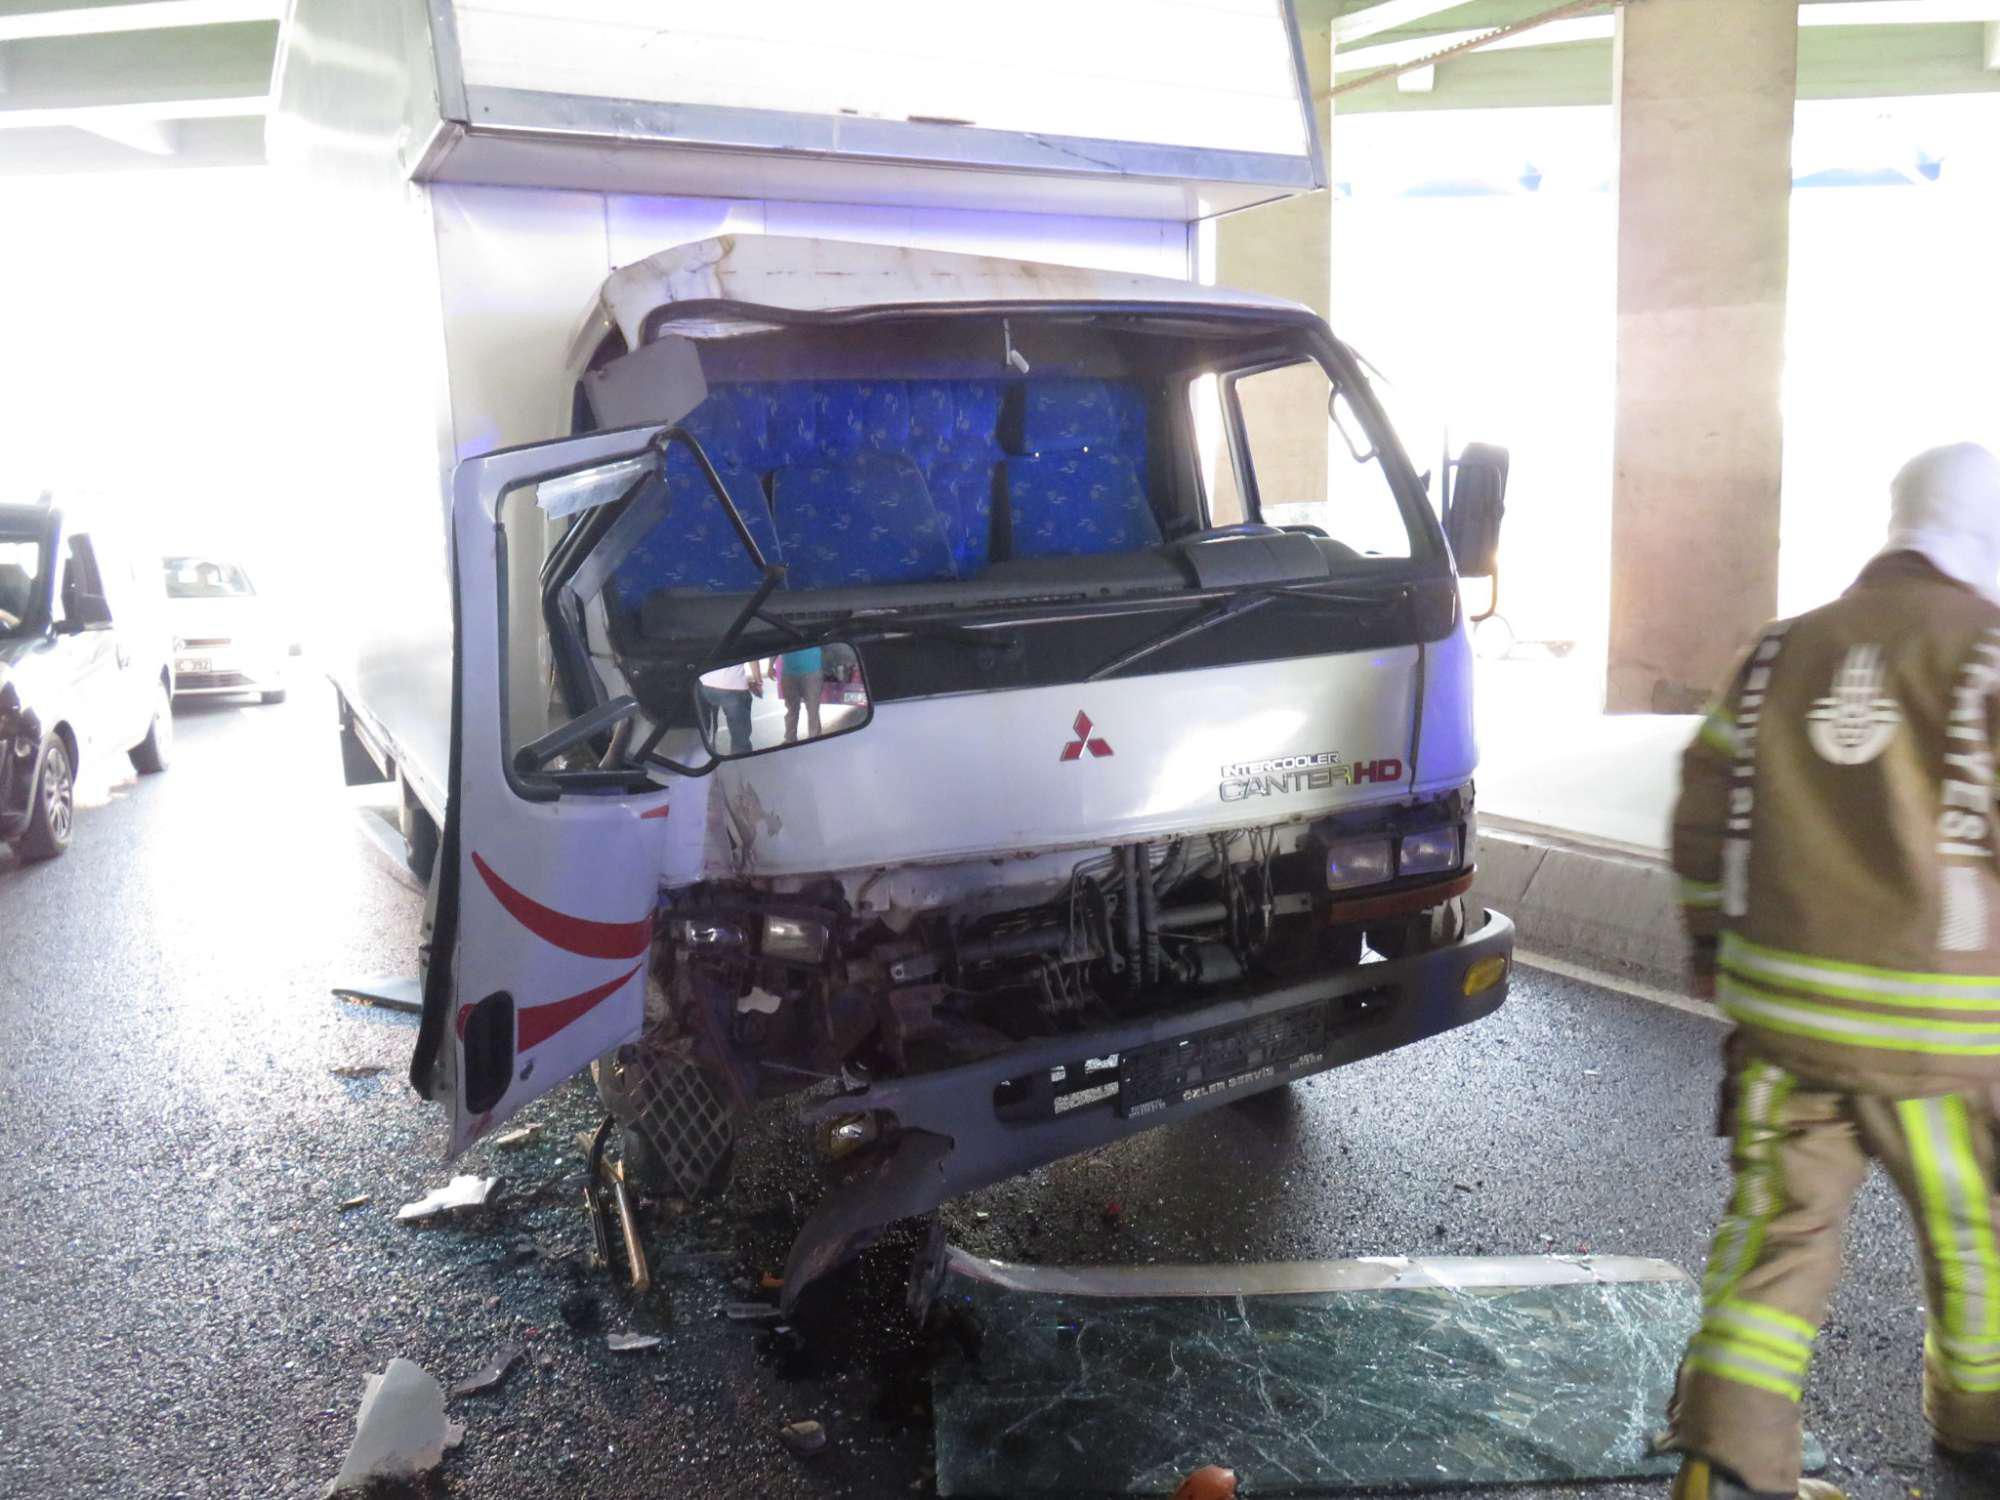 Üsküdarda kamyonet otobüse arkadan çarptı: 2 yaralı